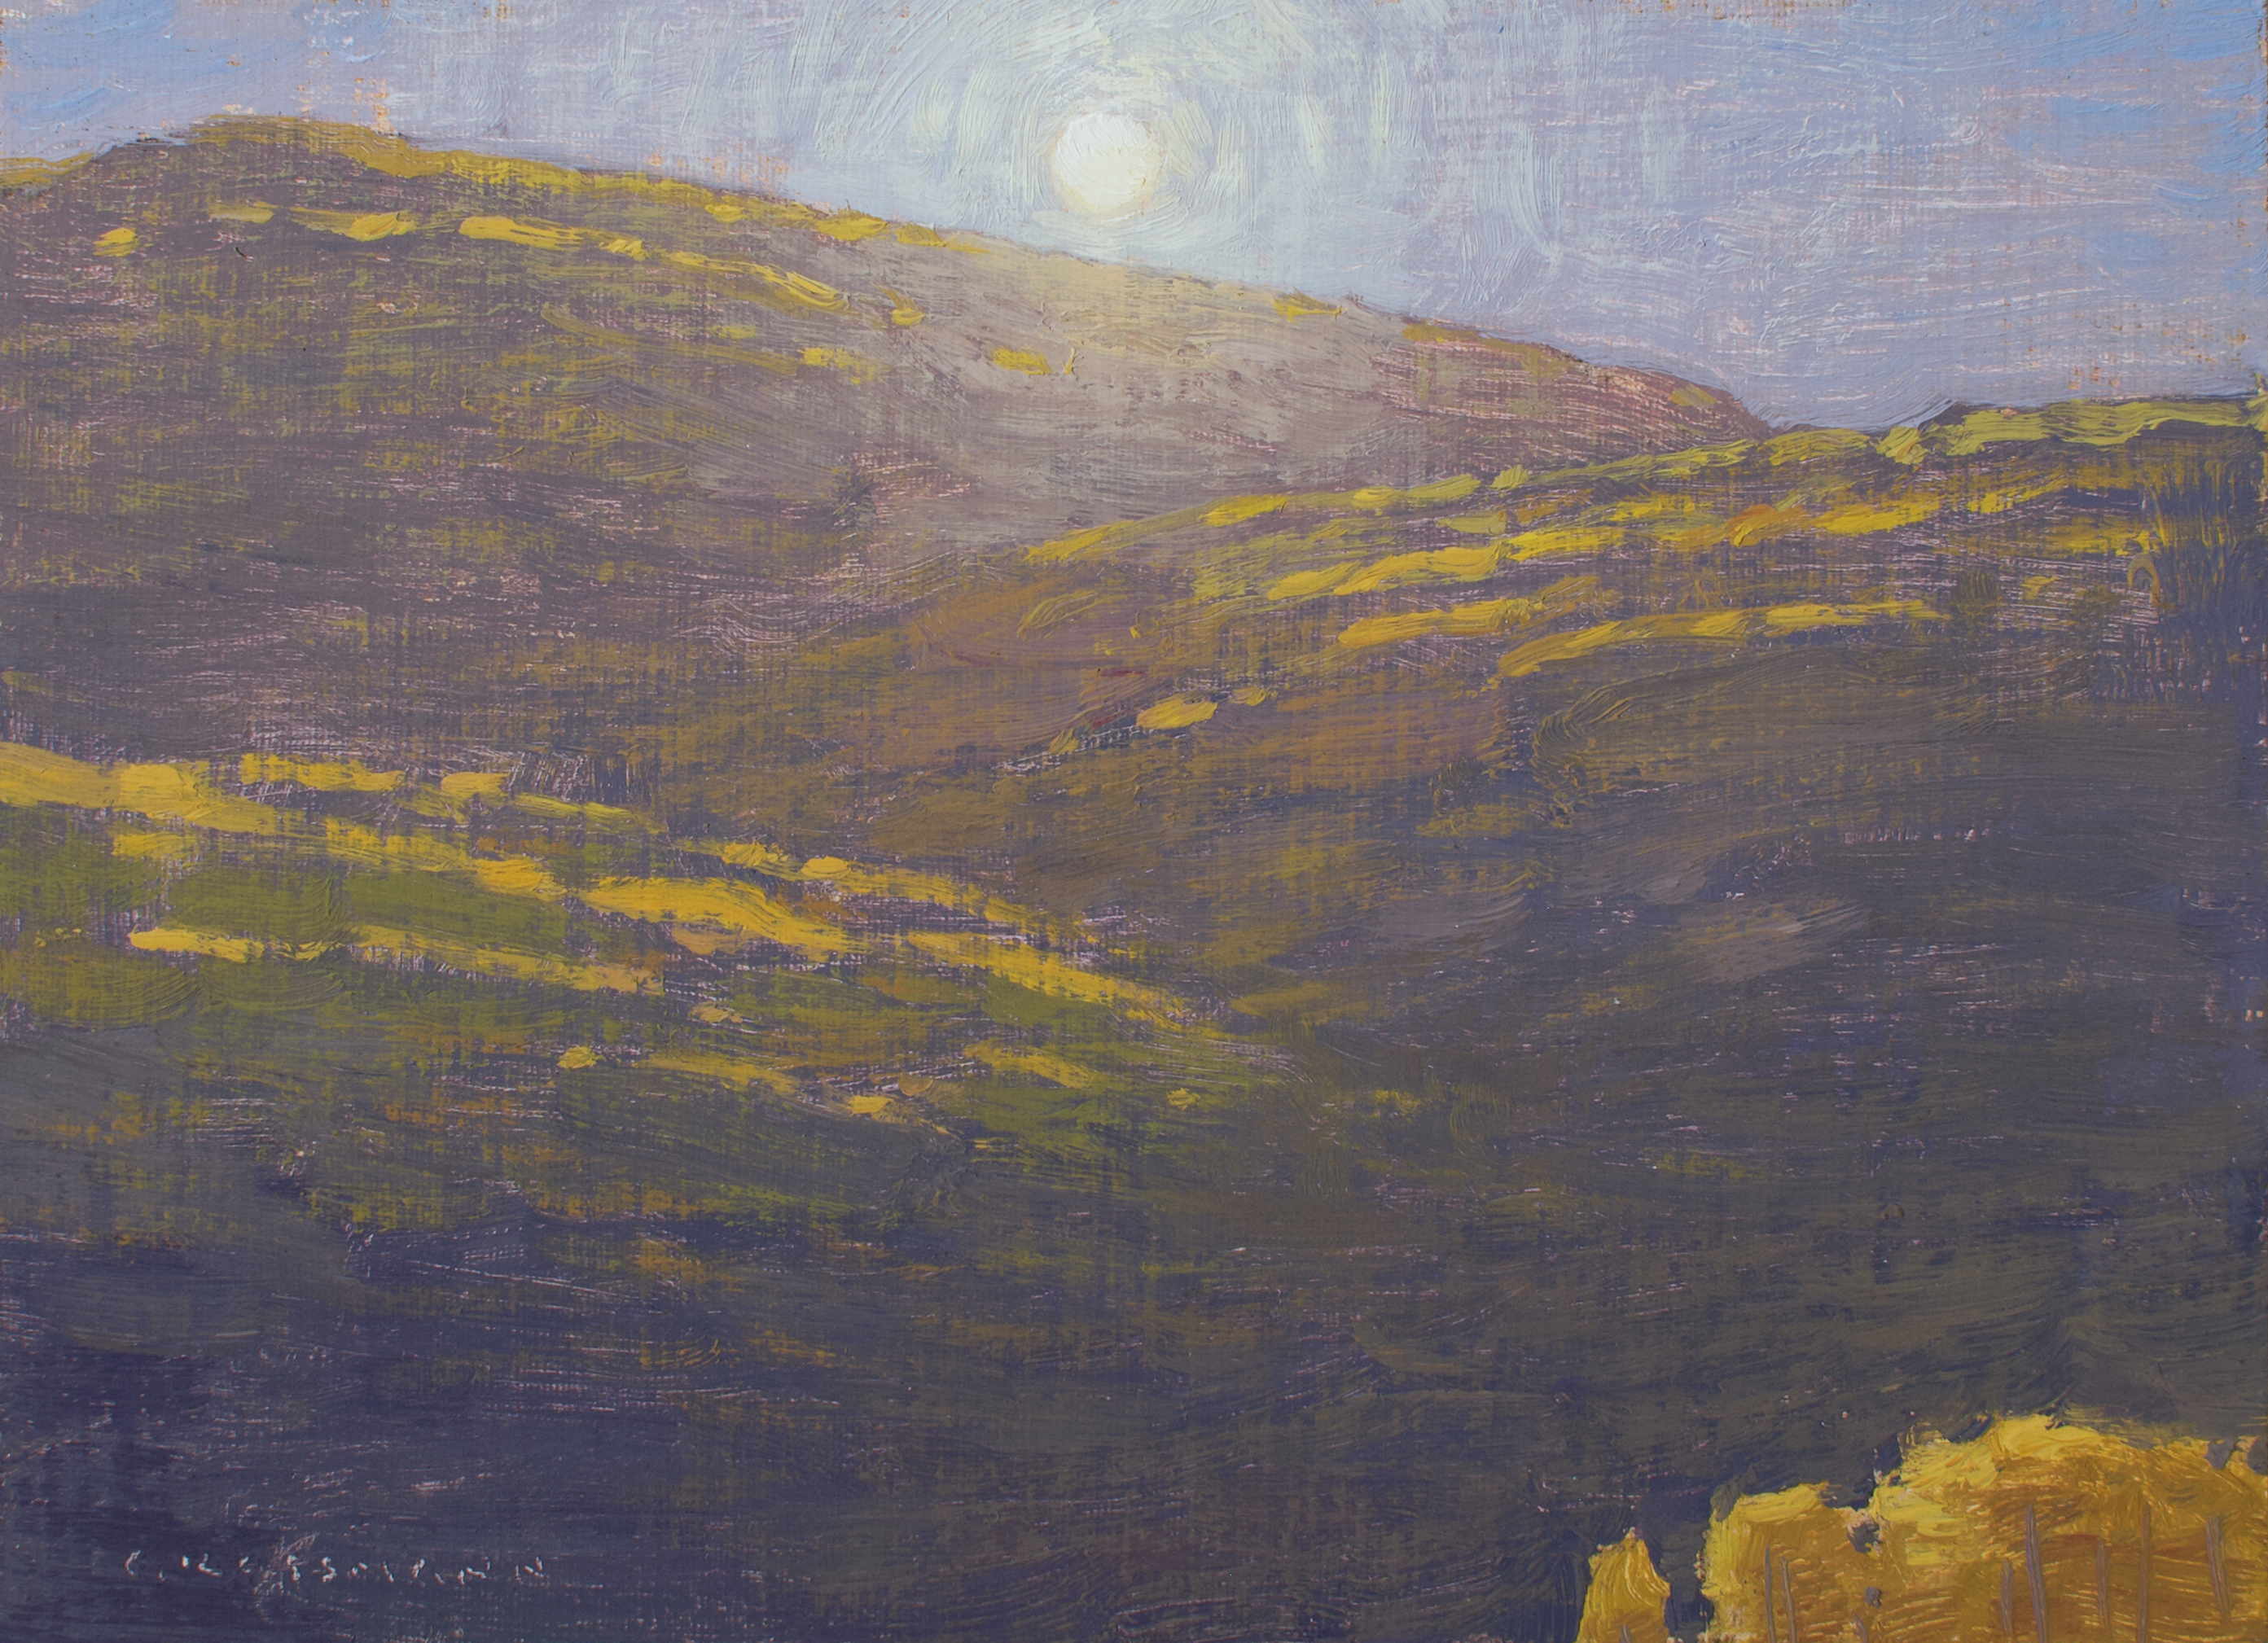 Morning Autumn Sun Near Kebler Pass, 6x8 inches, oil on linen panel